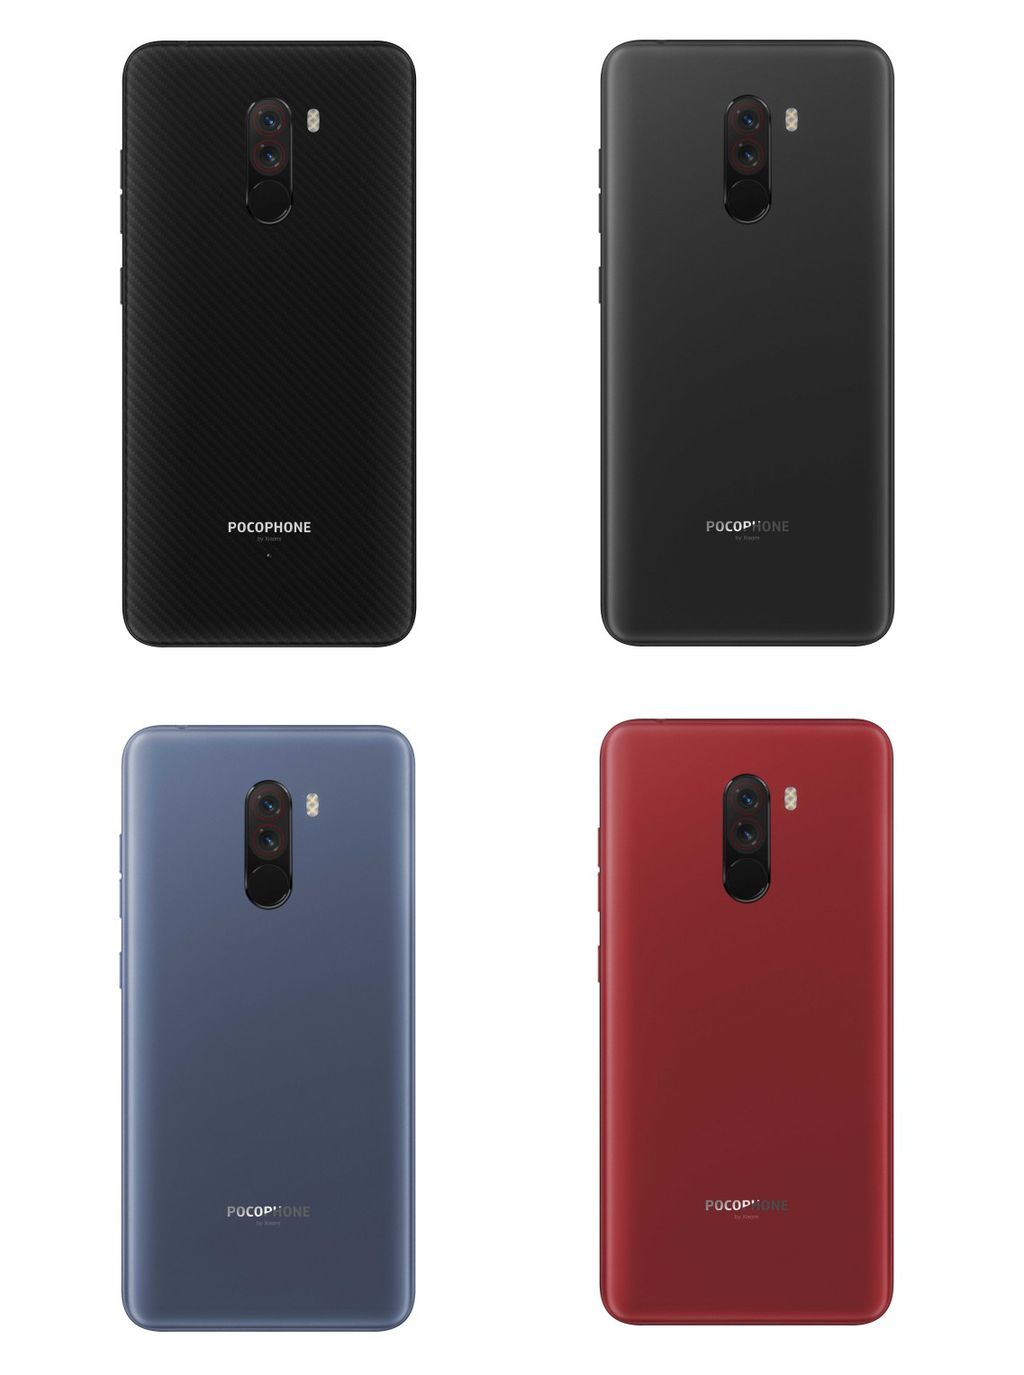 Xiaomi Pocophone F1 é anunciado com Snapdragon 845 e custando US$ 300 